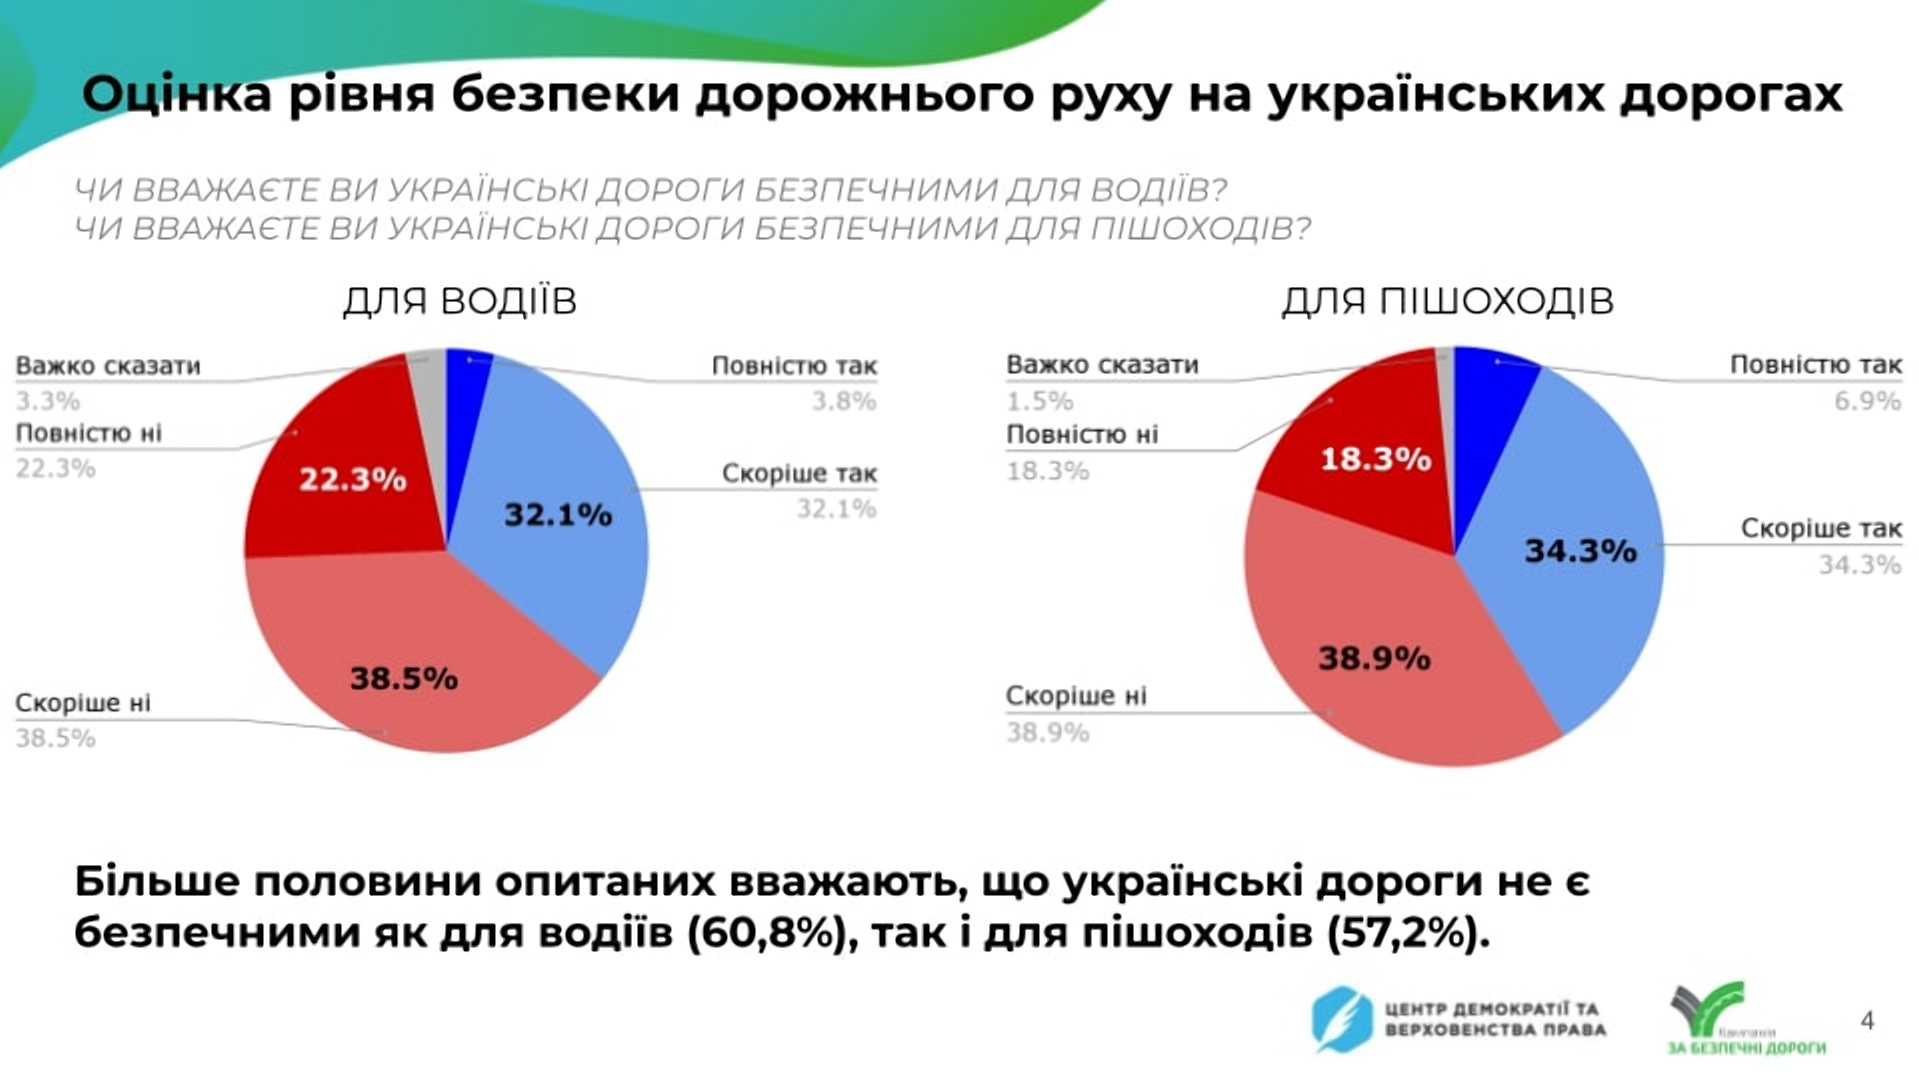 Більшість українців підтримала запровадження штрафу за перевищення швидкості від 10 до 20 км/год